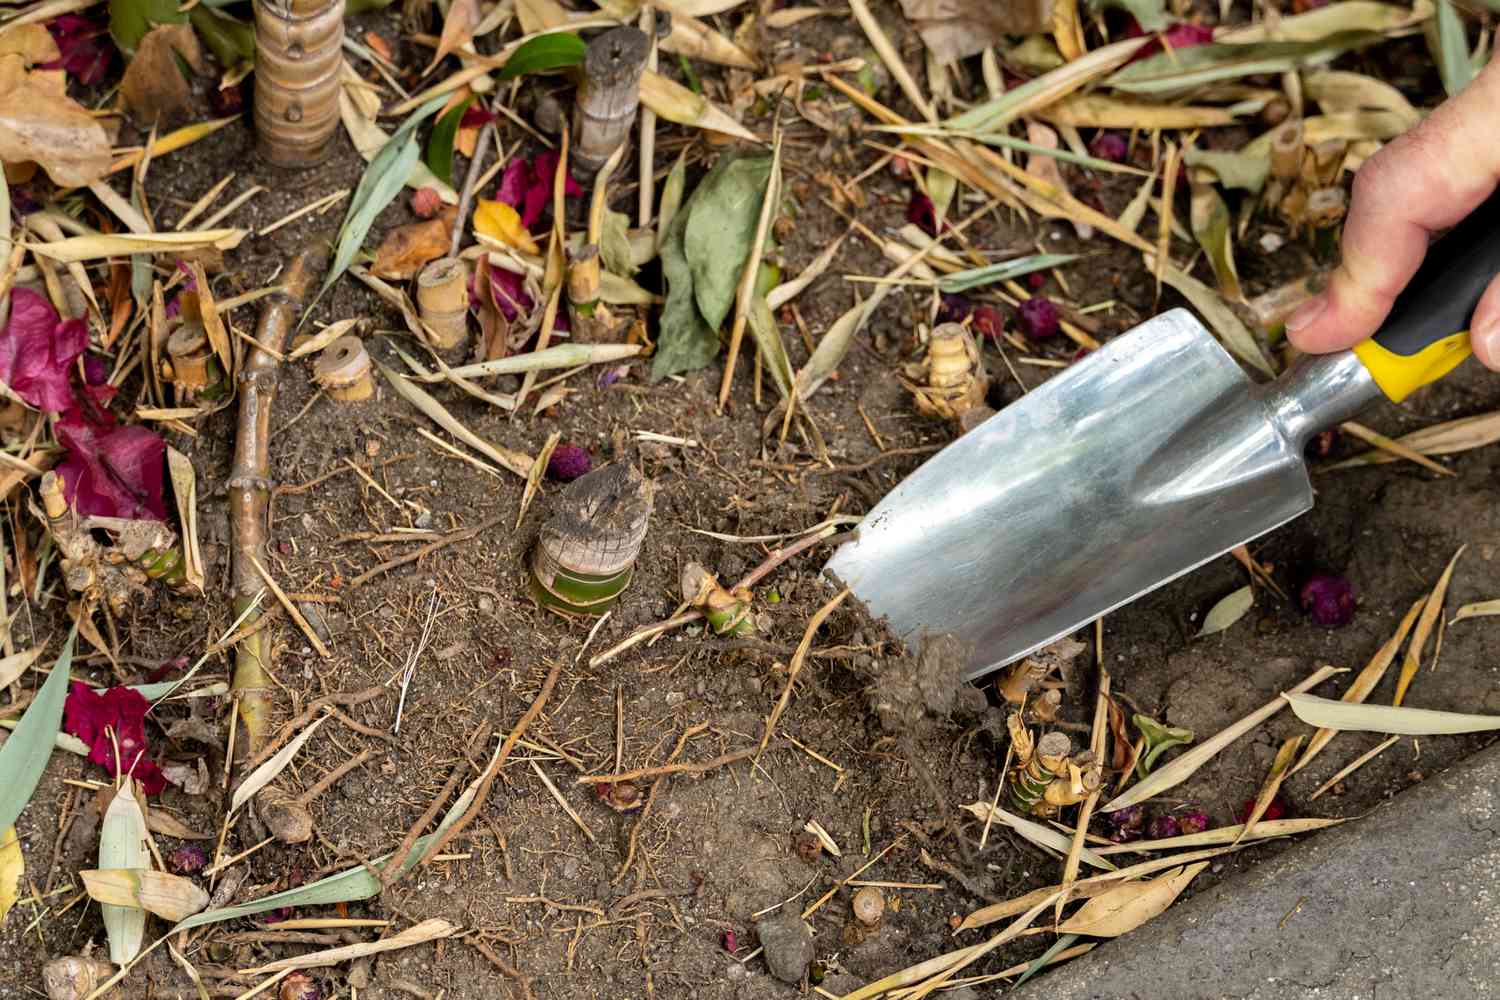 Spade shovel loosening soil from around cut bamboo base